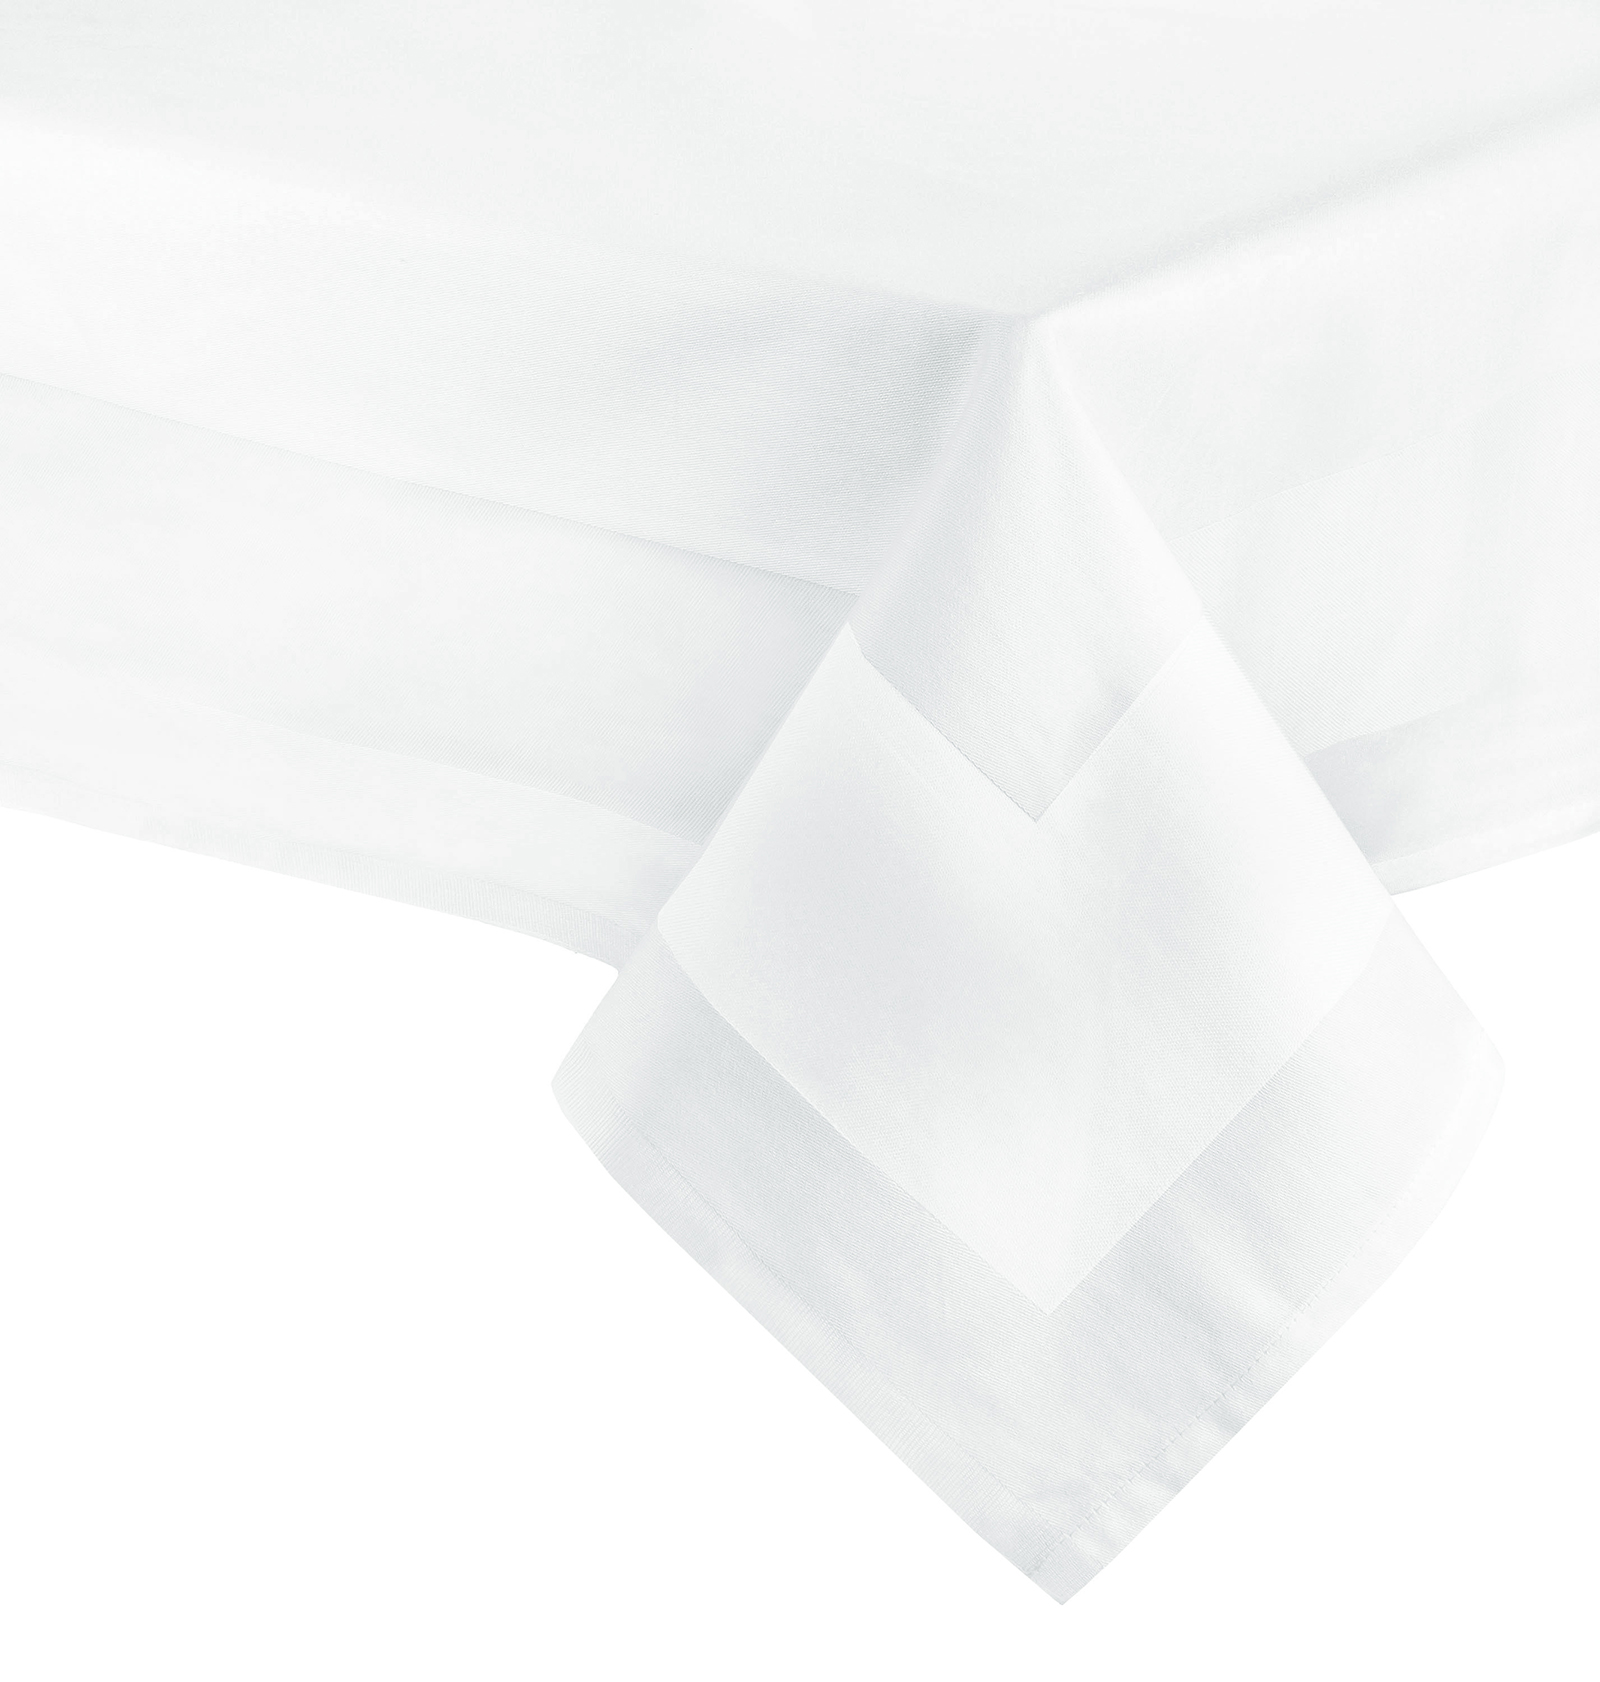 Runde Decke 240 cm   rund   DAMAST Tischdecke Tafeltuch Tablecloth Raute  weiß 